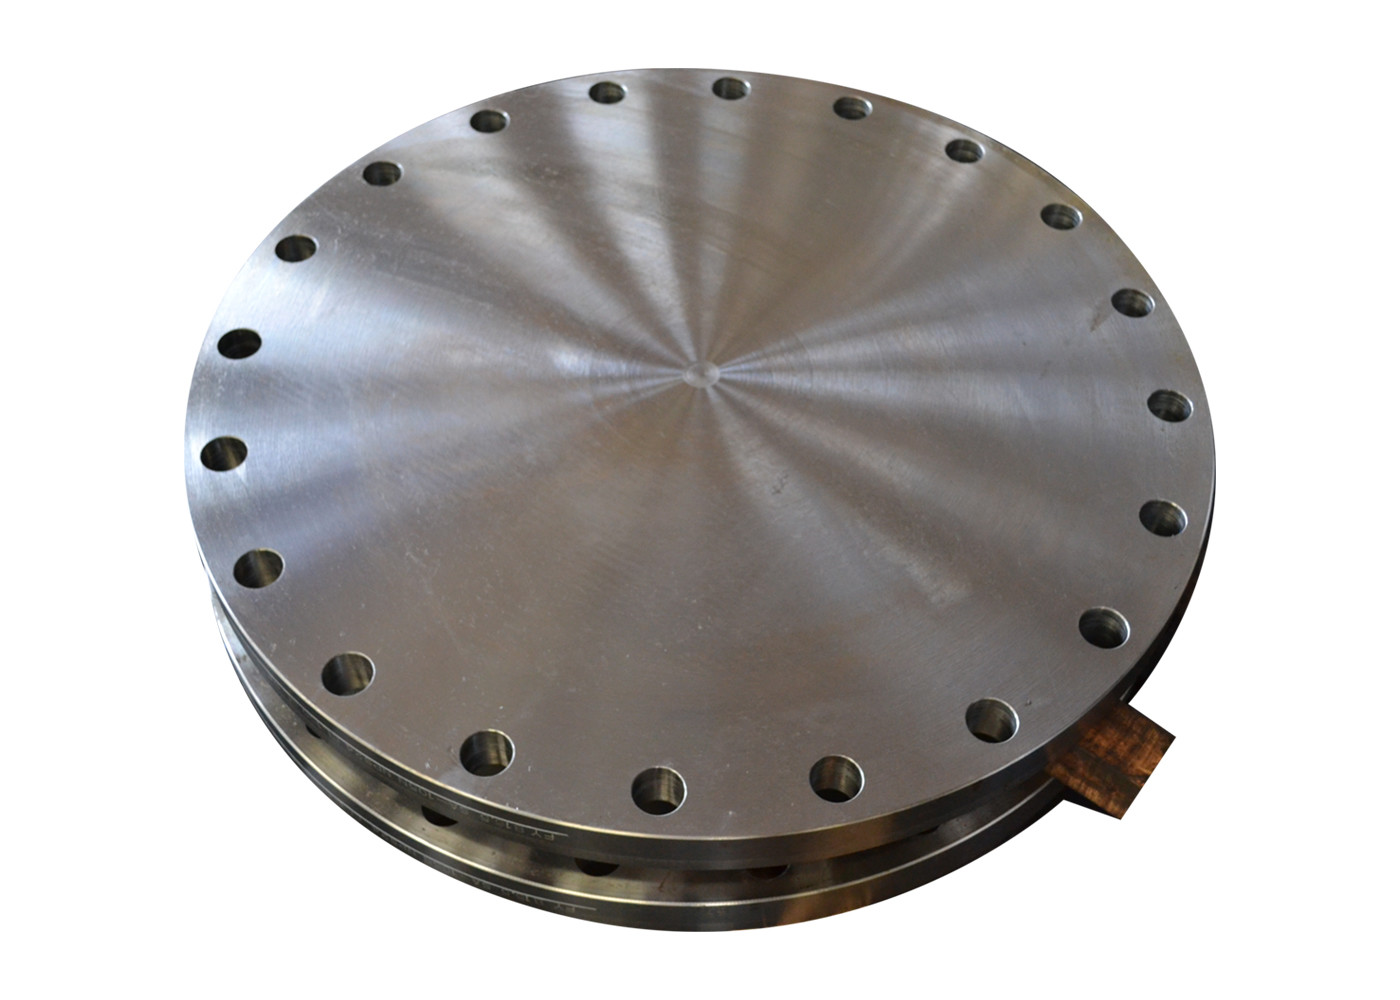 Max3000mm Disco forjado de aço inoxidável ou aço carbono ou aço ligado